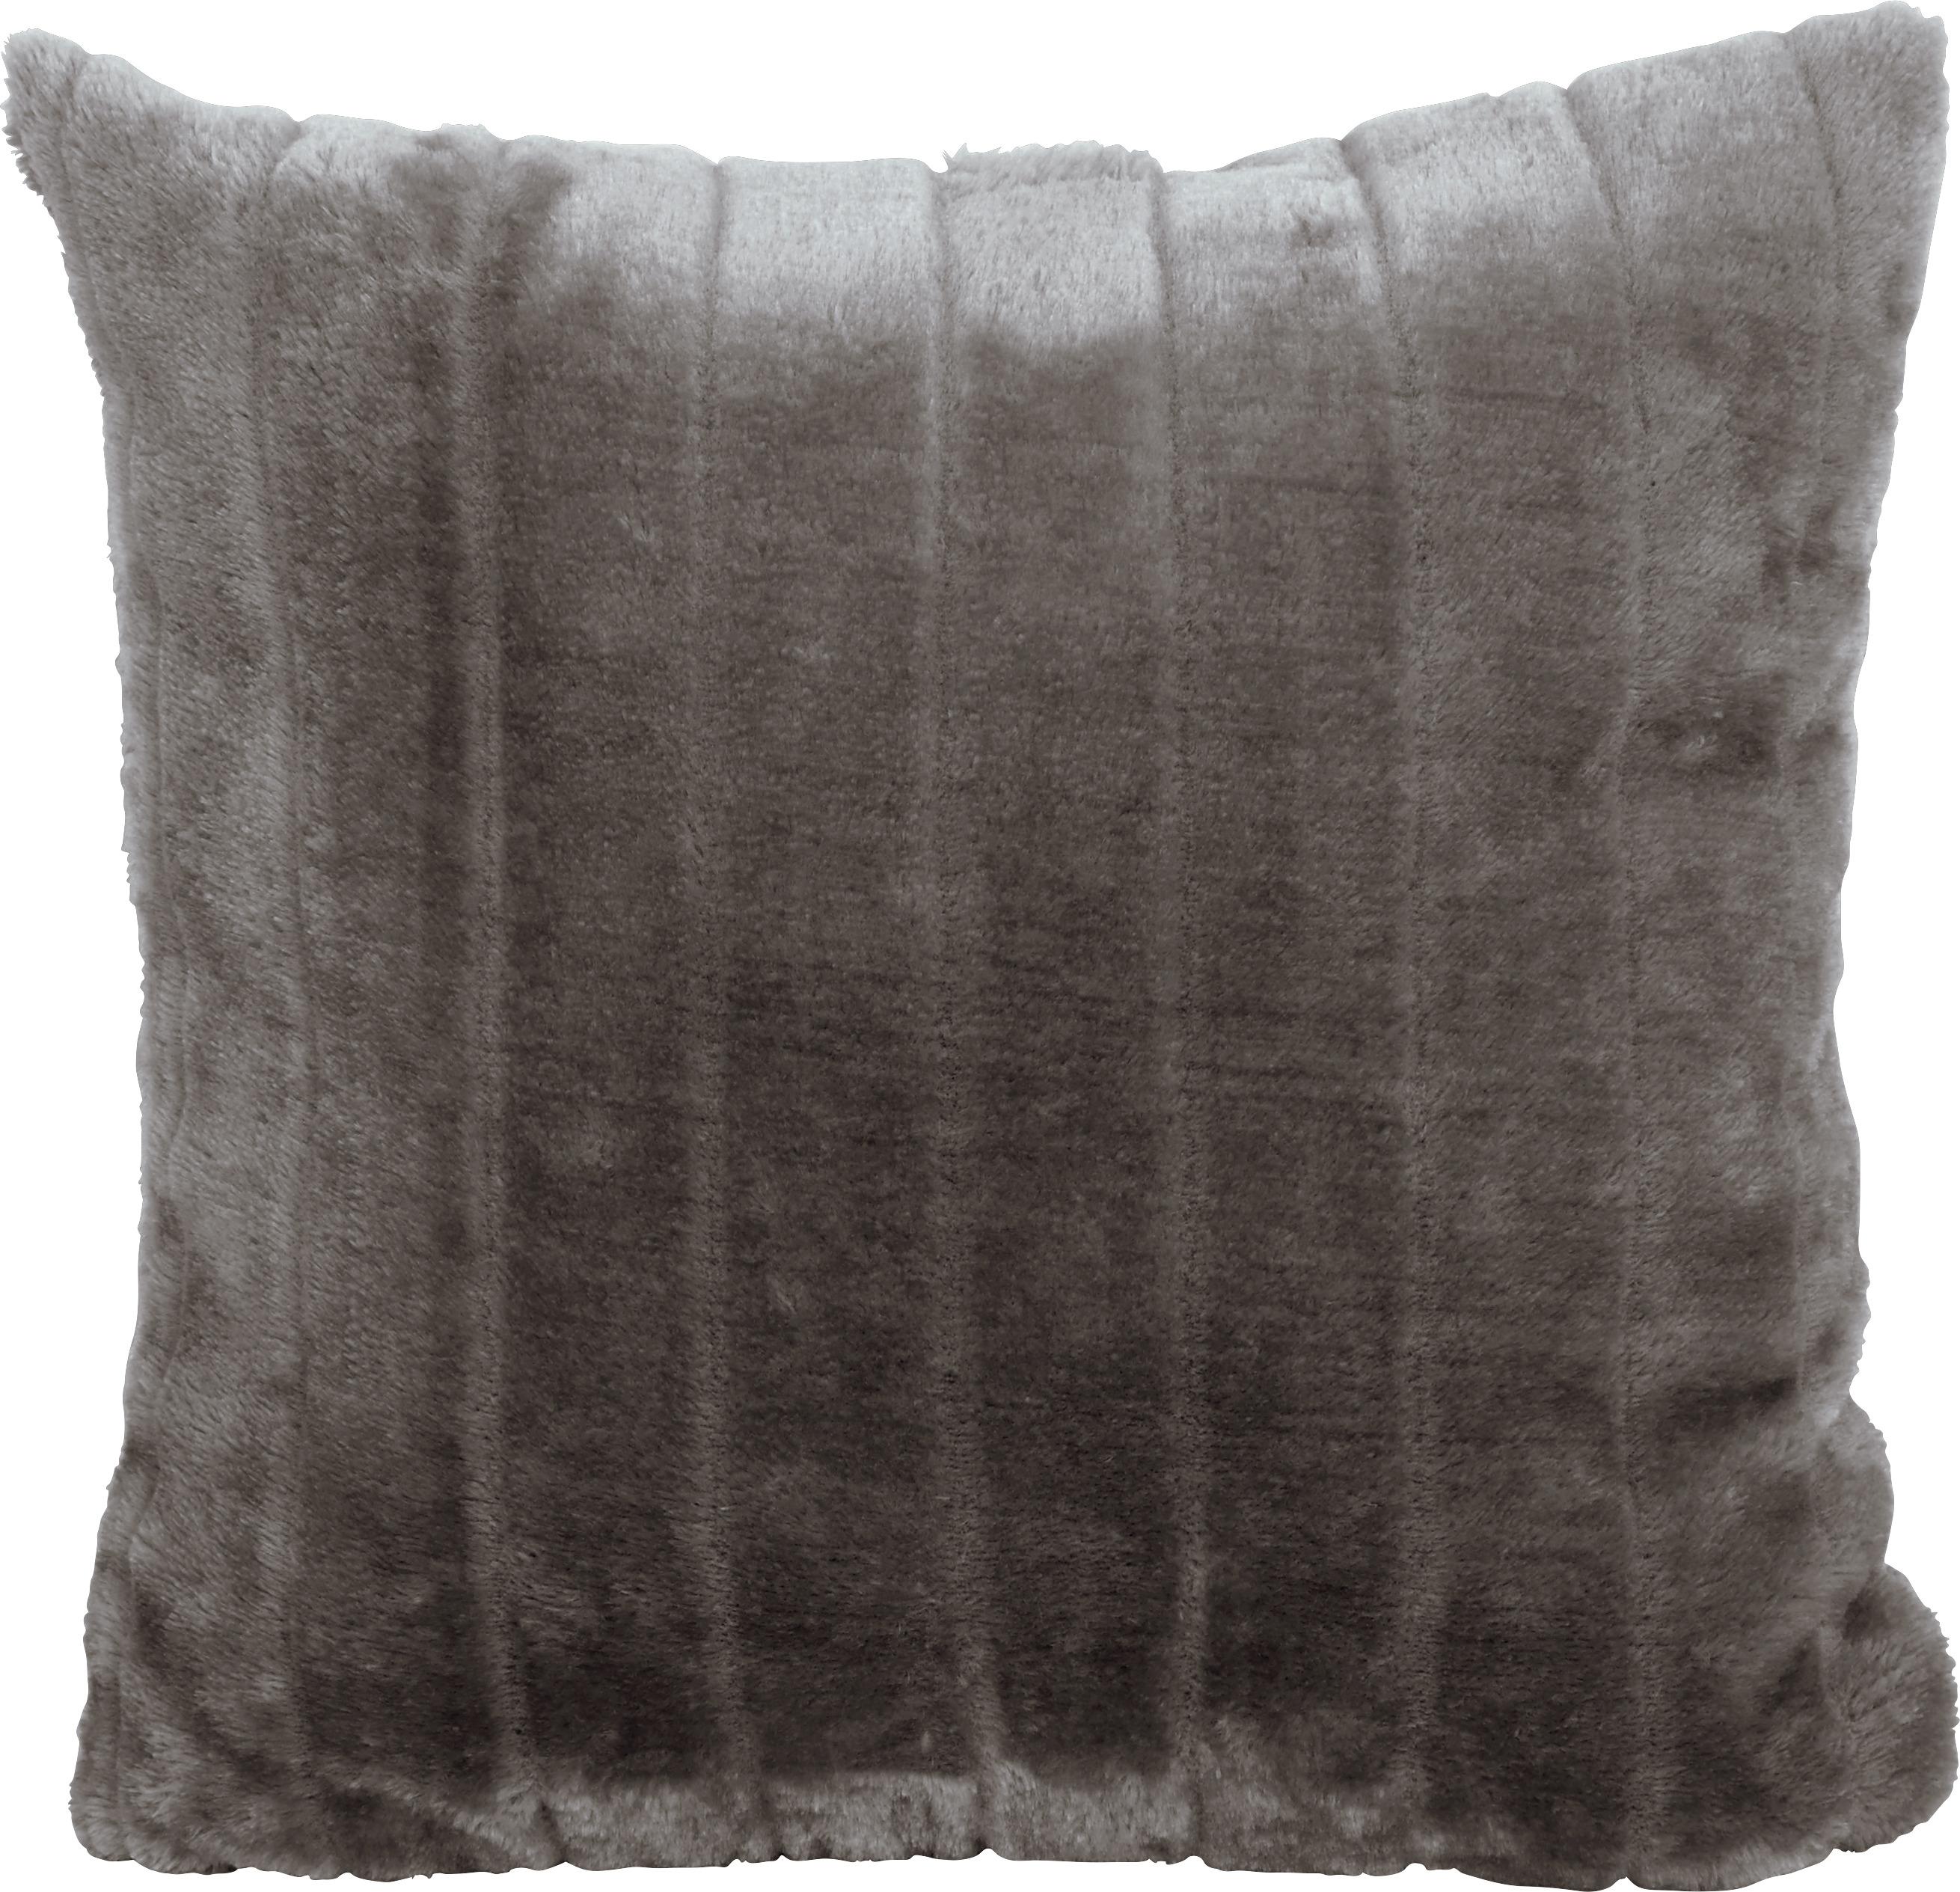 Zierkissen Emma 45x45 cm Silberfarben mit Zipp - Silberfarben, KONVENTIONELL, Textil (45/45cm) - Ondega